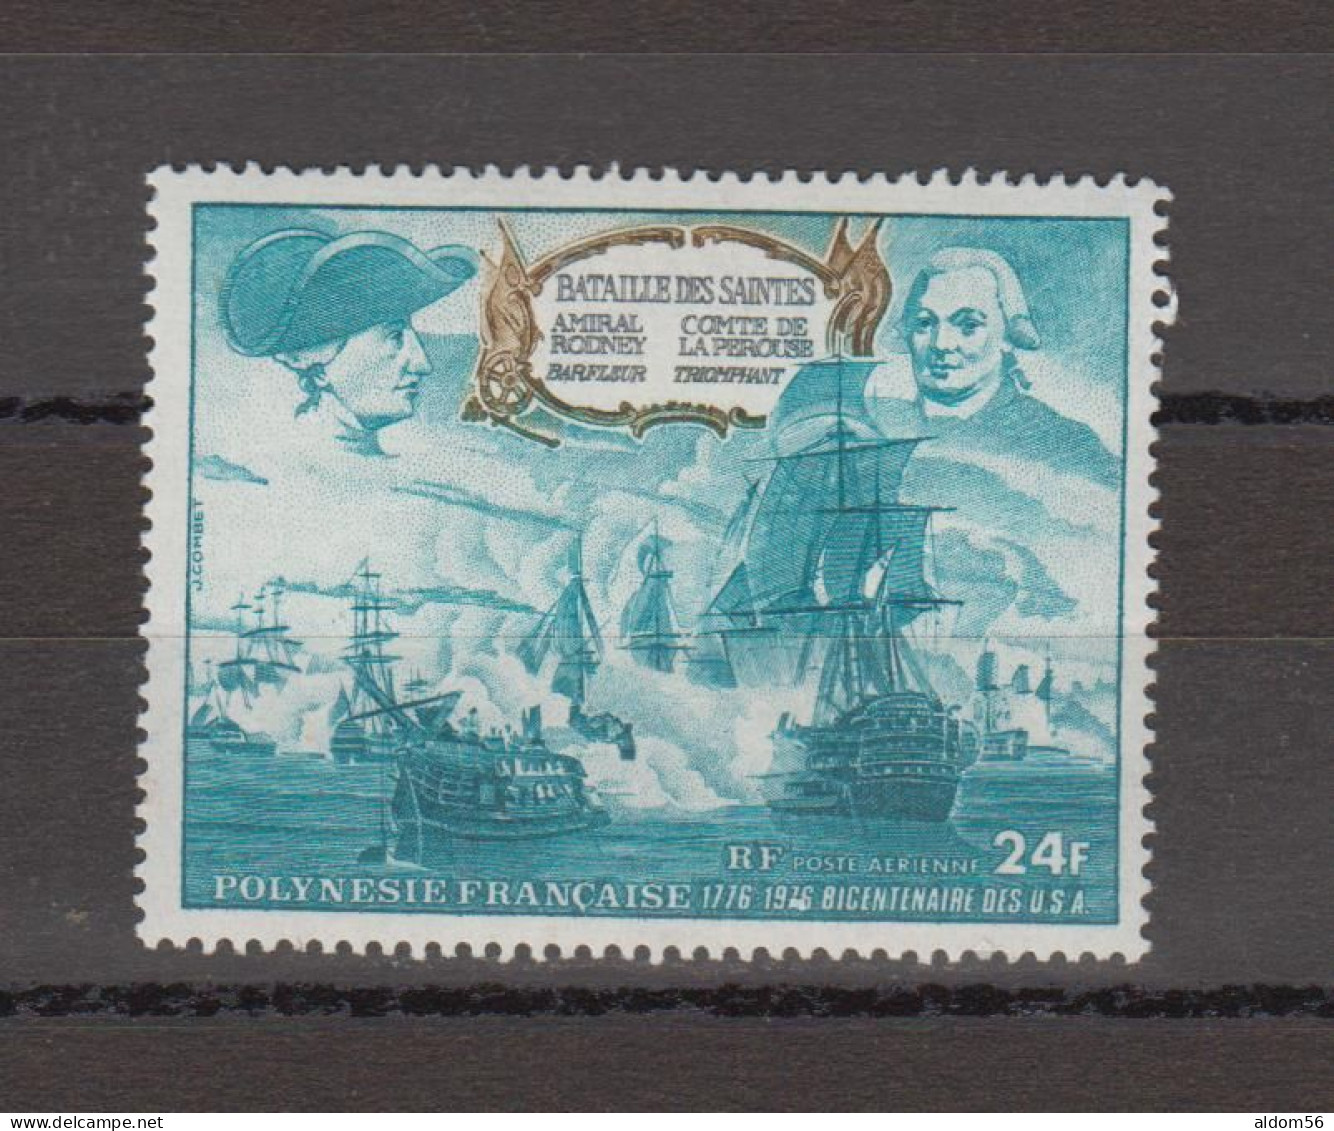 Lot de timbres neufs** Polynésie dans classeur